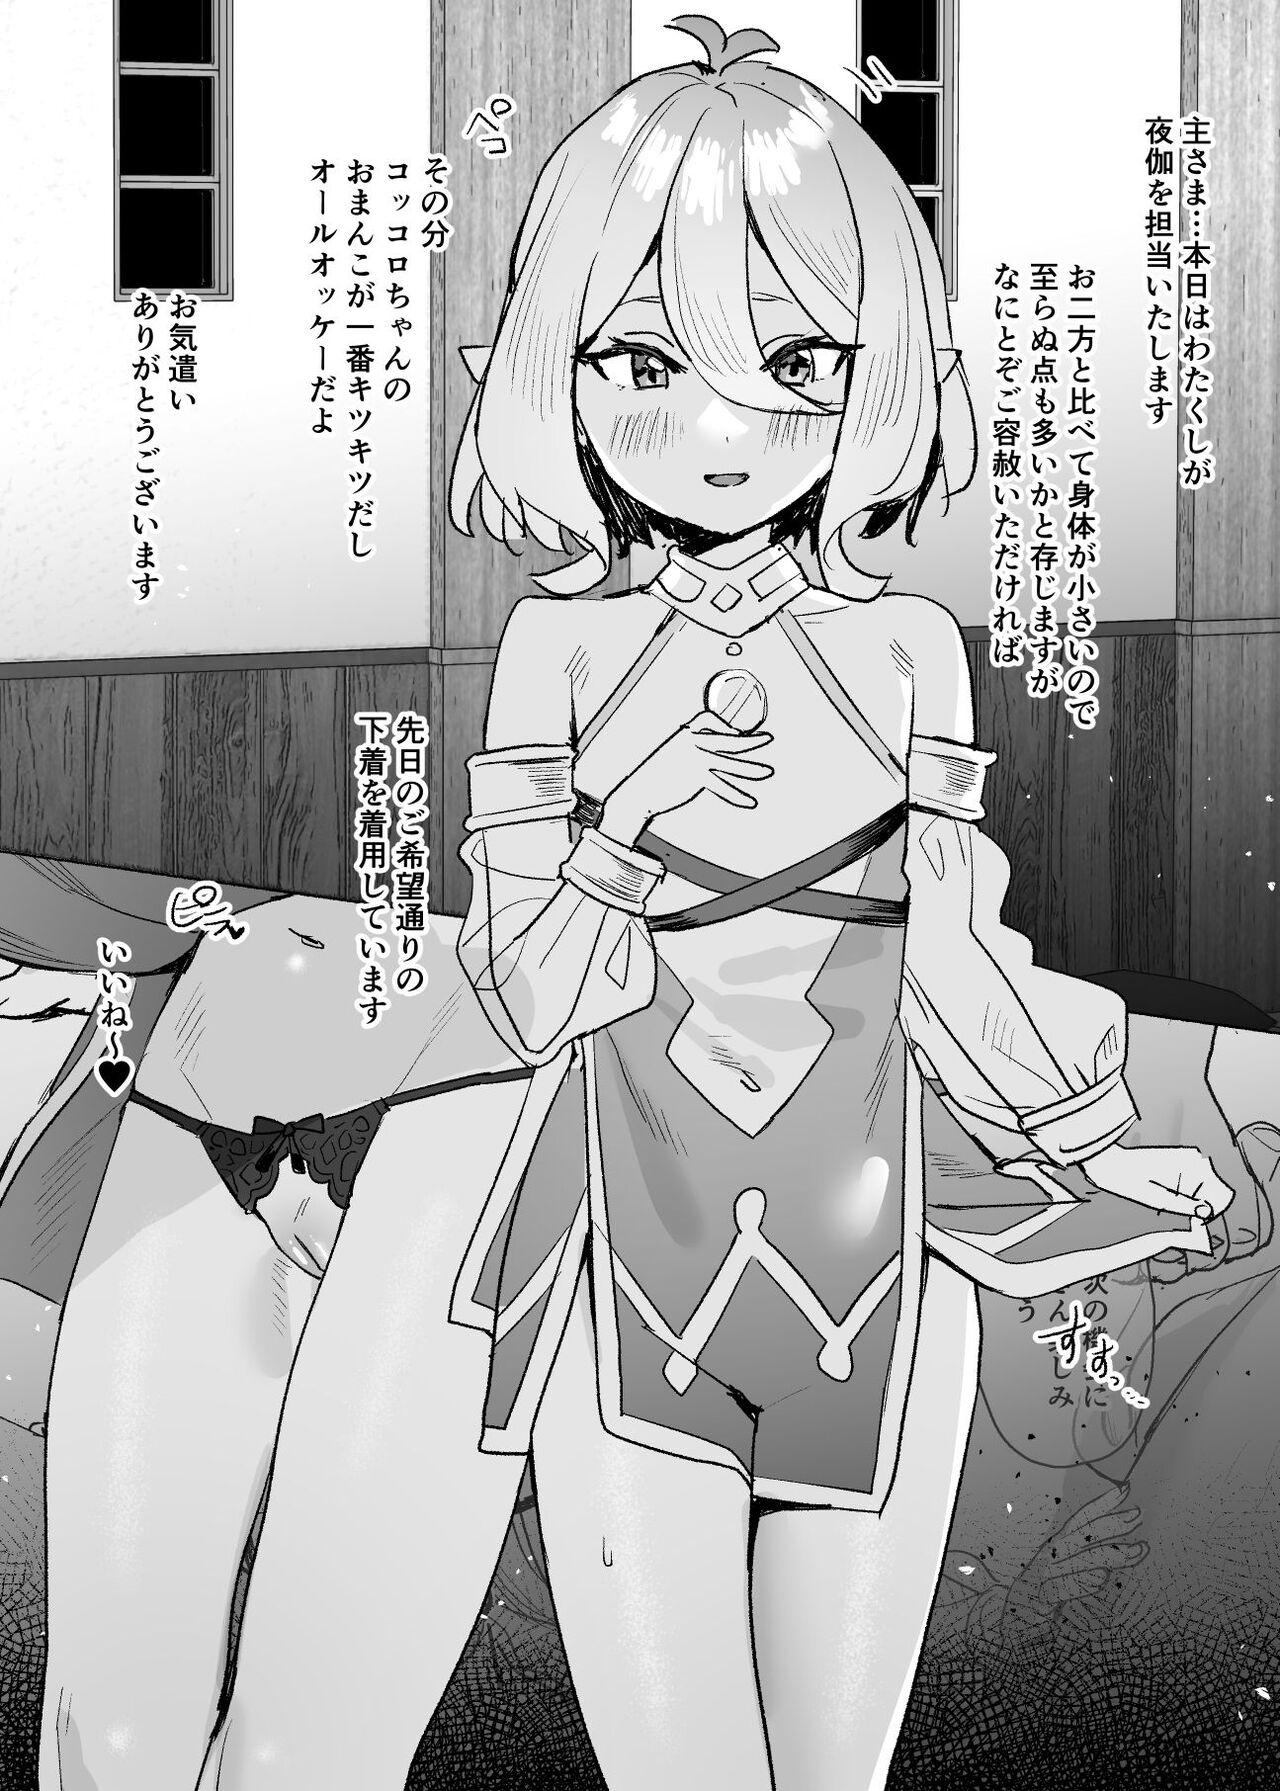 Eating Kokkoro-chan Manga - Princess connect Anale - Page 1